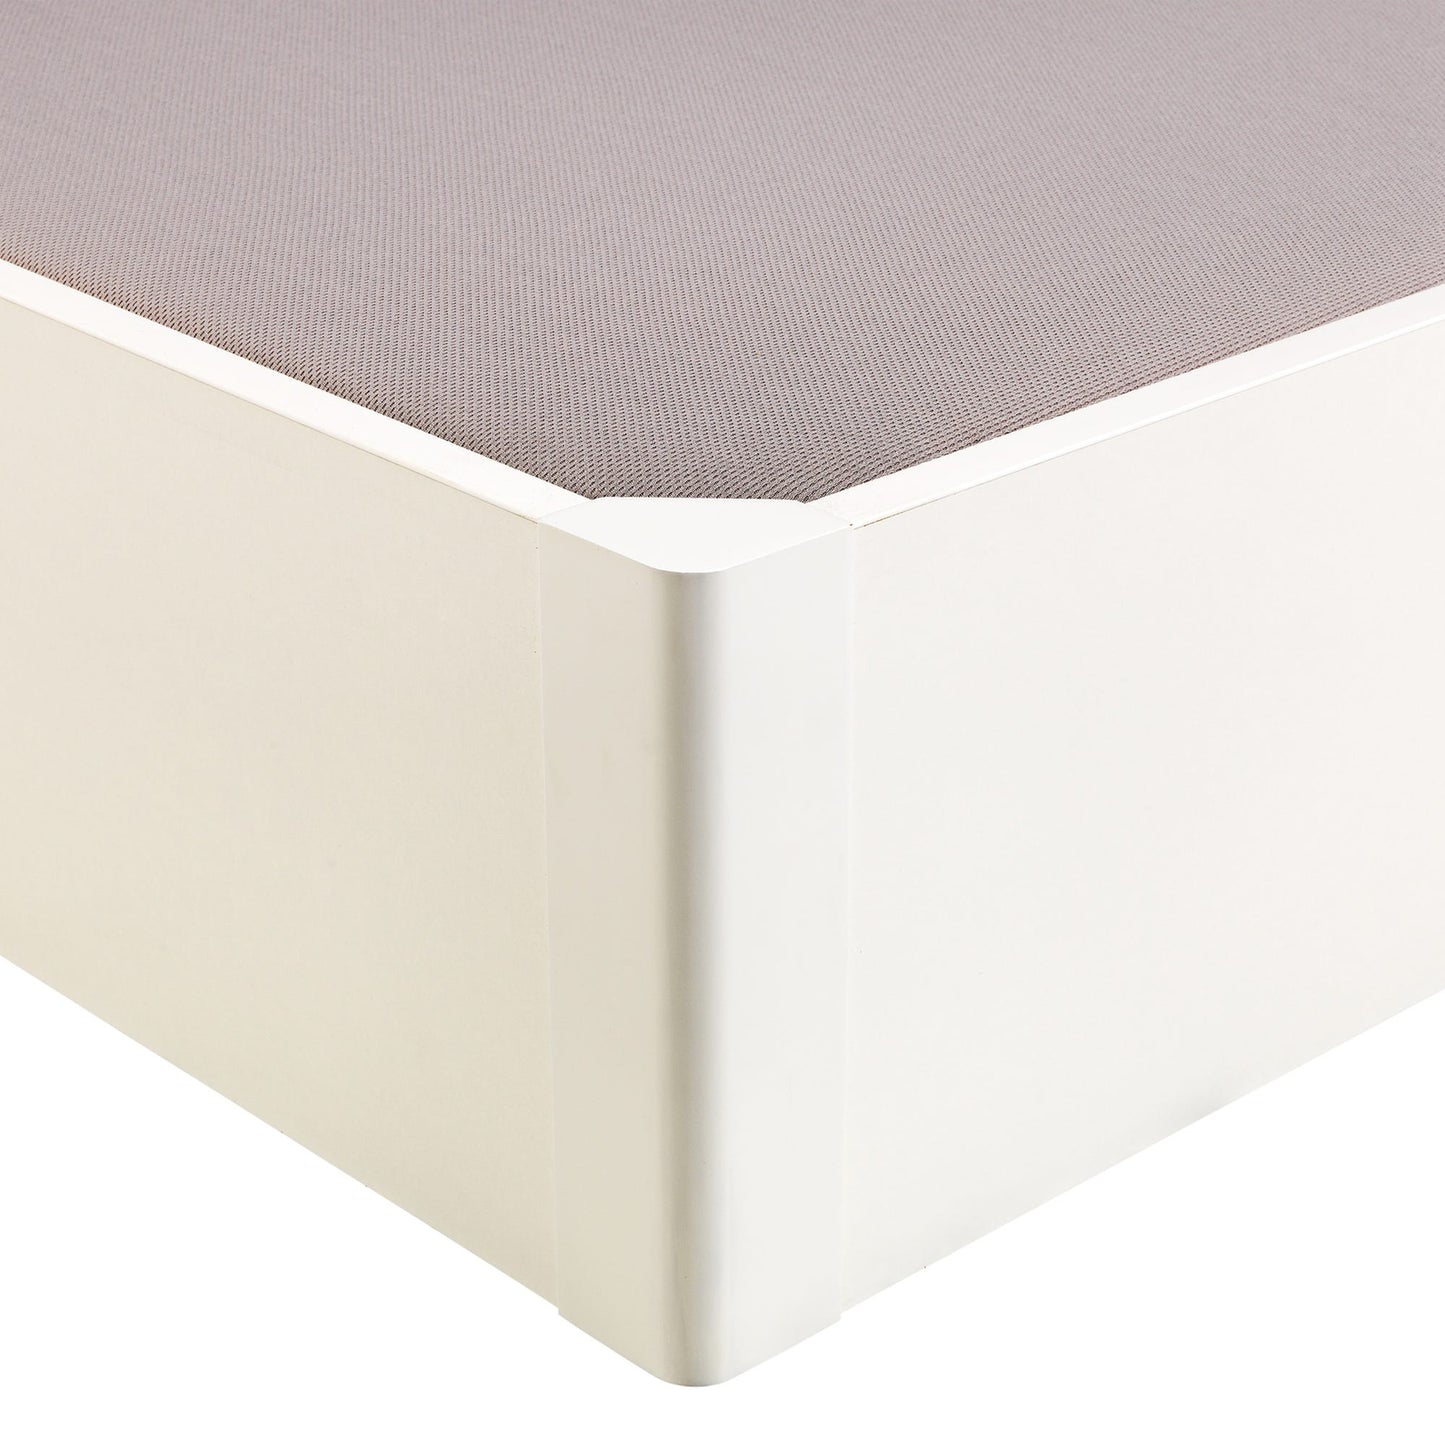 Canapé abatible de madera tapa única de color blanco - DESIGN - 140x182